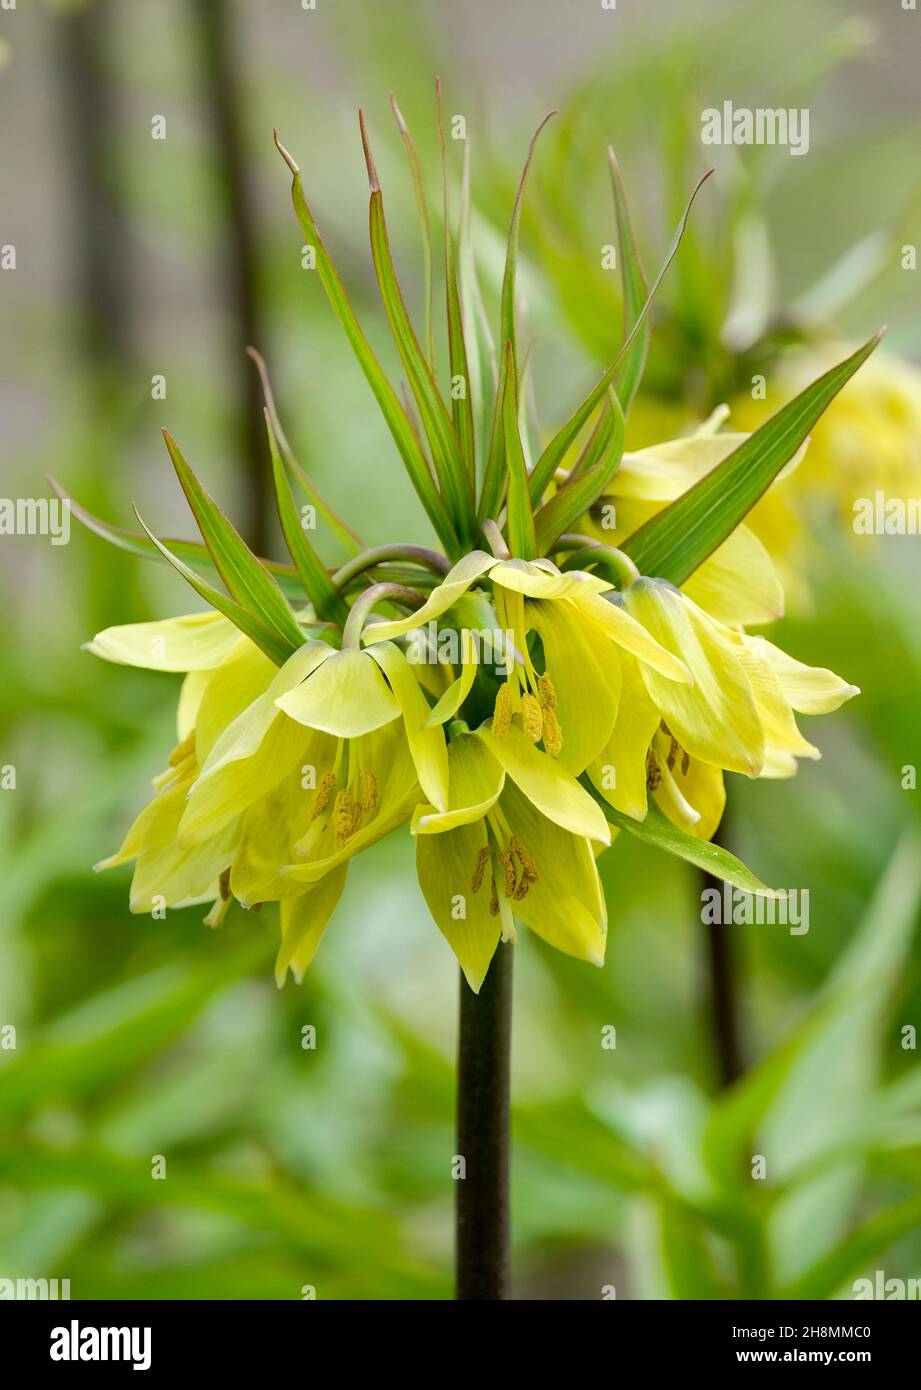 Fritillaria imperialis 'Early Sensation', Crown Imperial 'Early sensation'. Close-up of yellow flowers Stock Photo